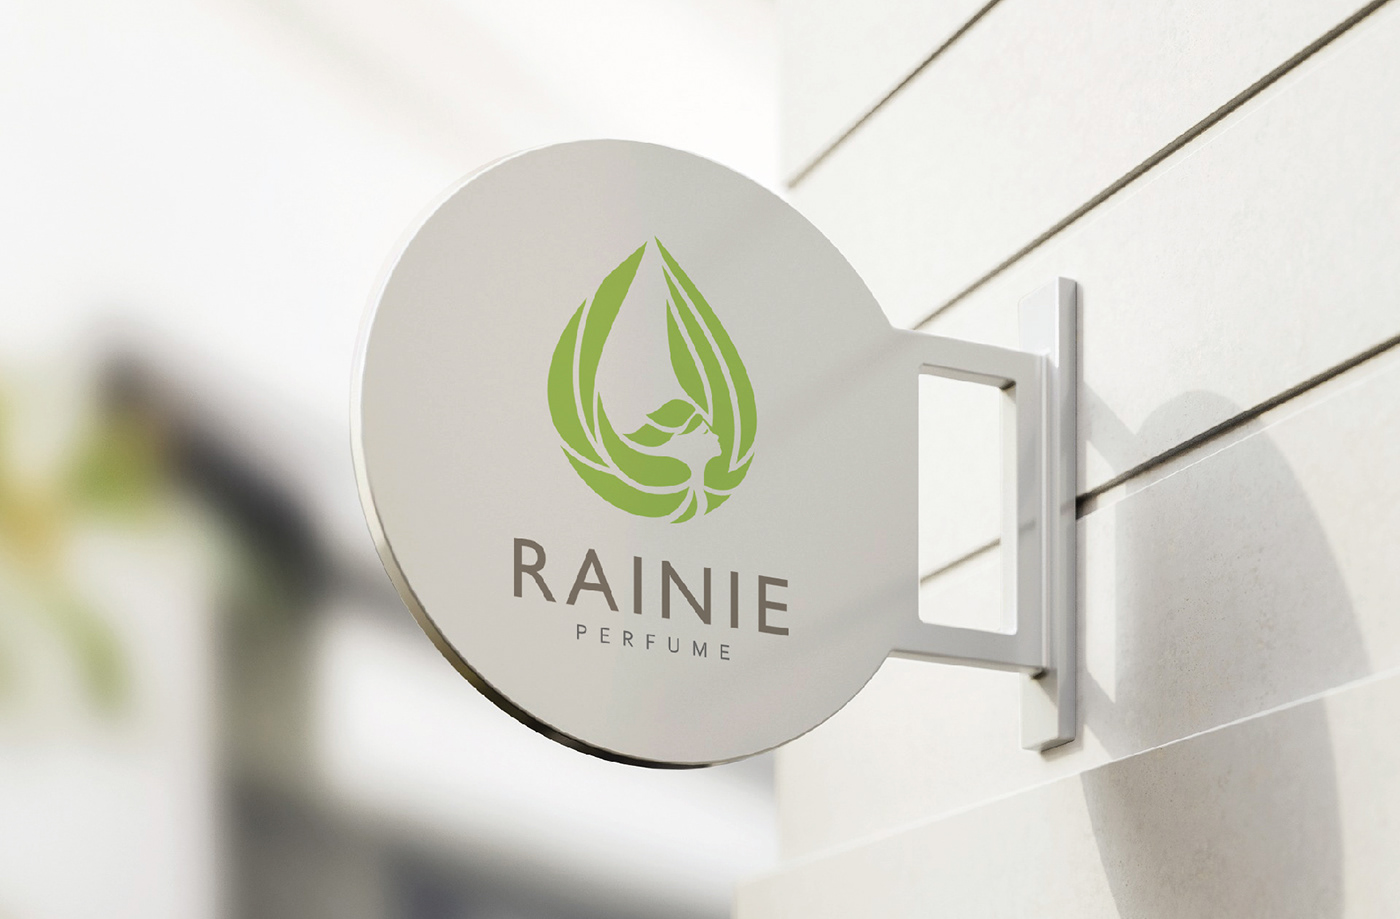 perfume natural rain pure elegant Branding Identity Design Logo Design logo idea rainie Branding design